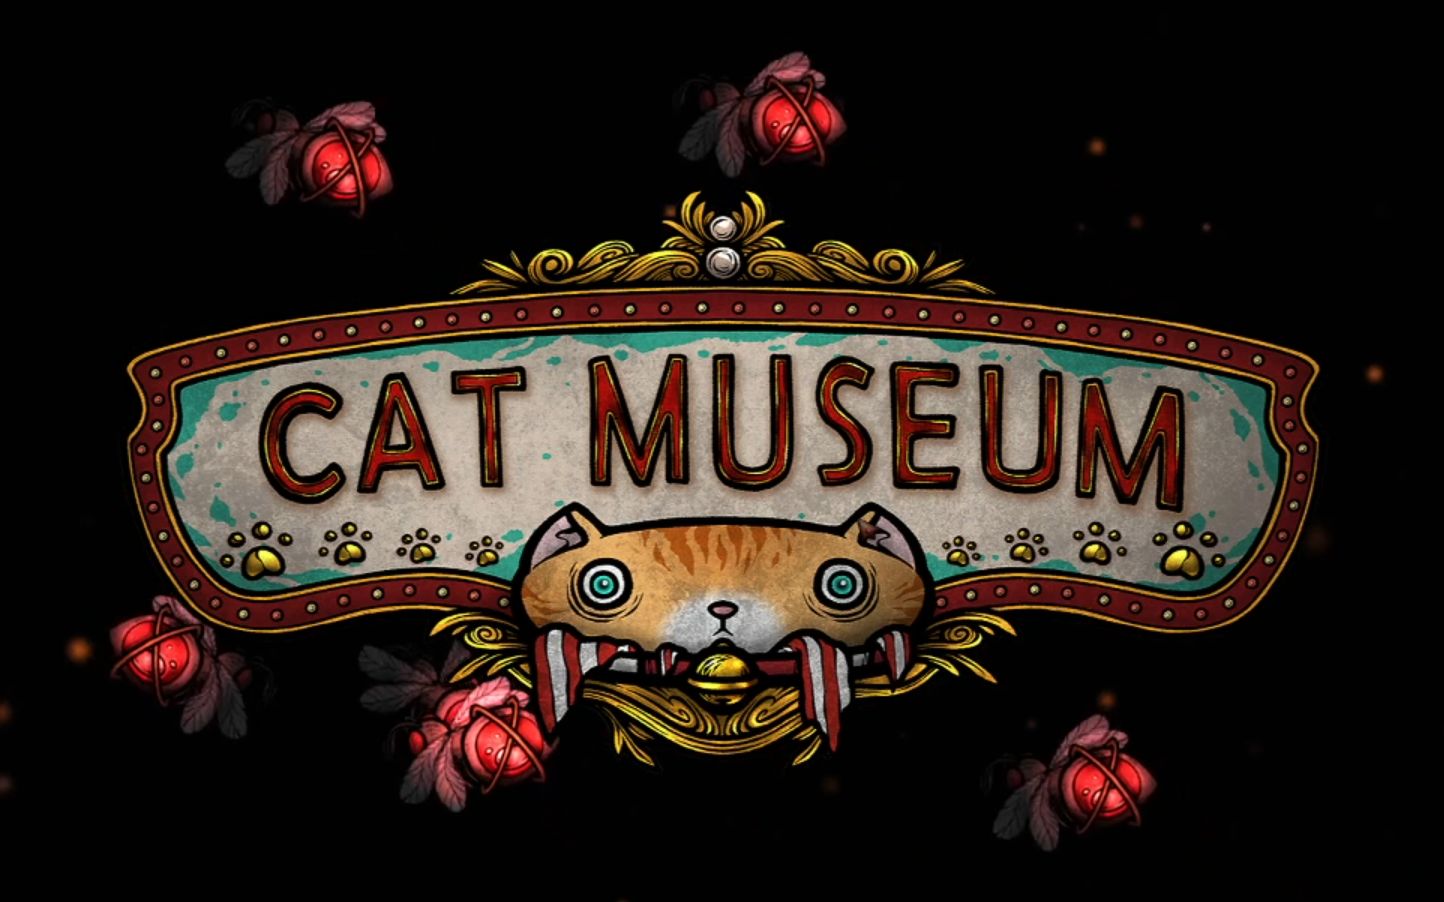 catmuseum猫咪博物馆游戏实况怪诞且治愈让人欲罢不能的游戏上